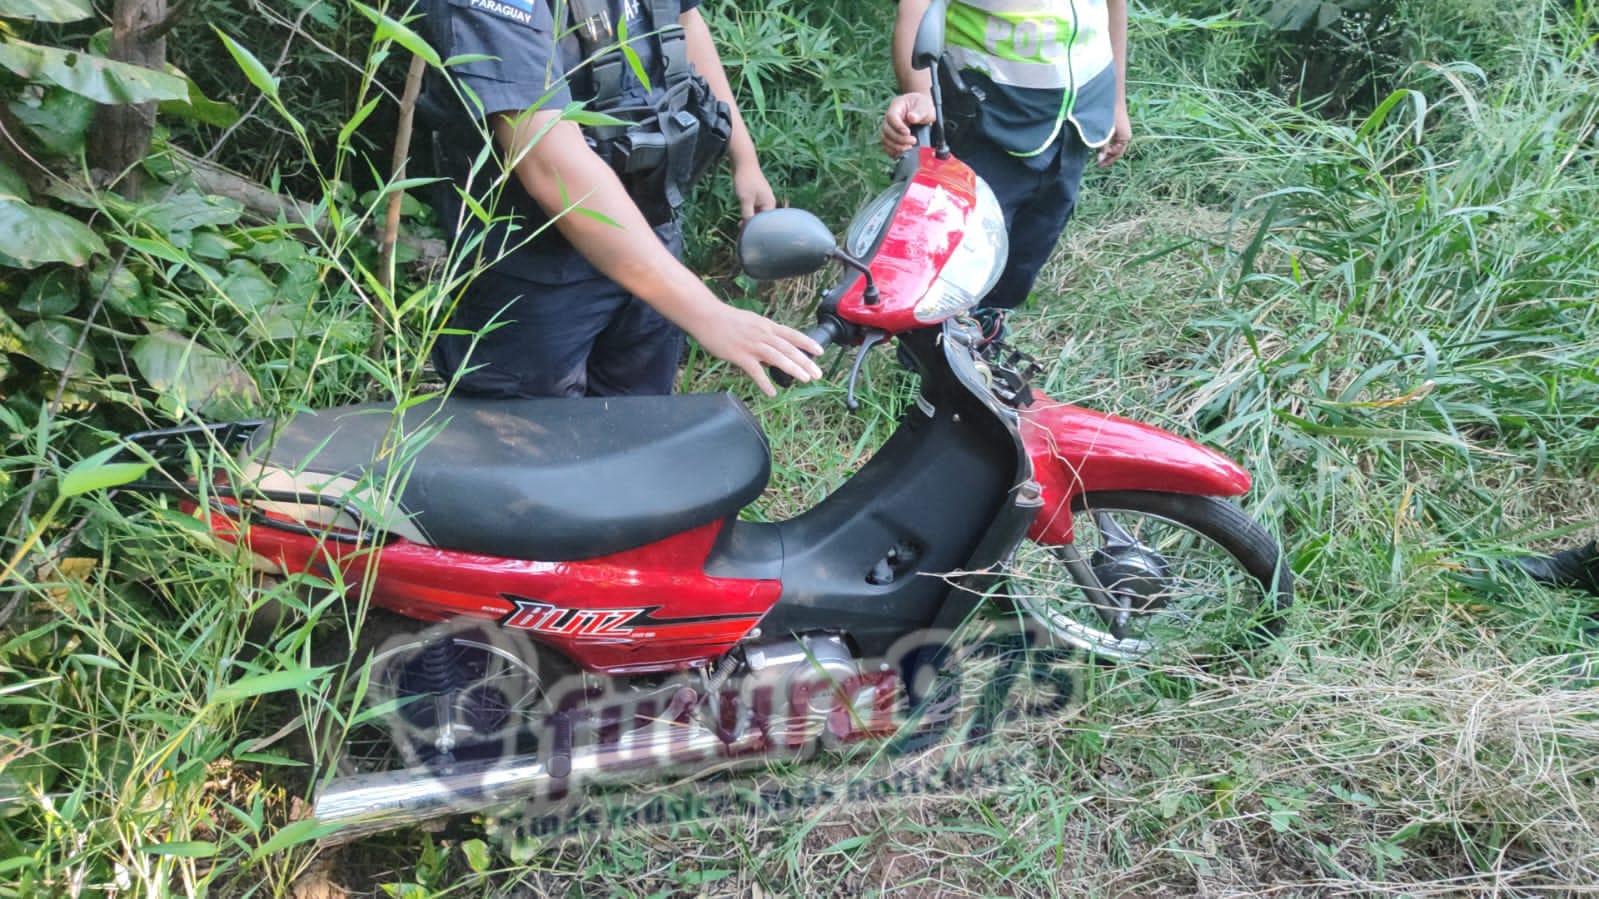 Recuperación de motocicleta hurtada gracias al rastreo satelital